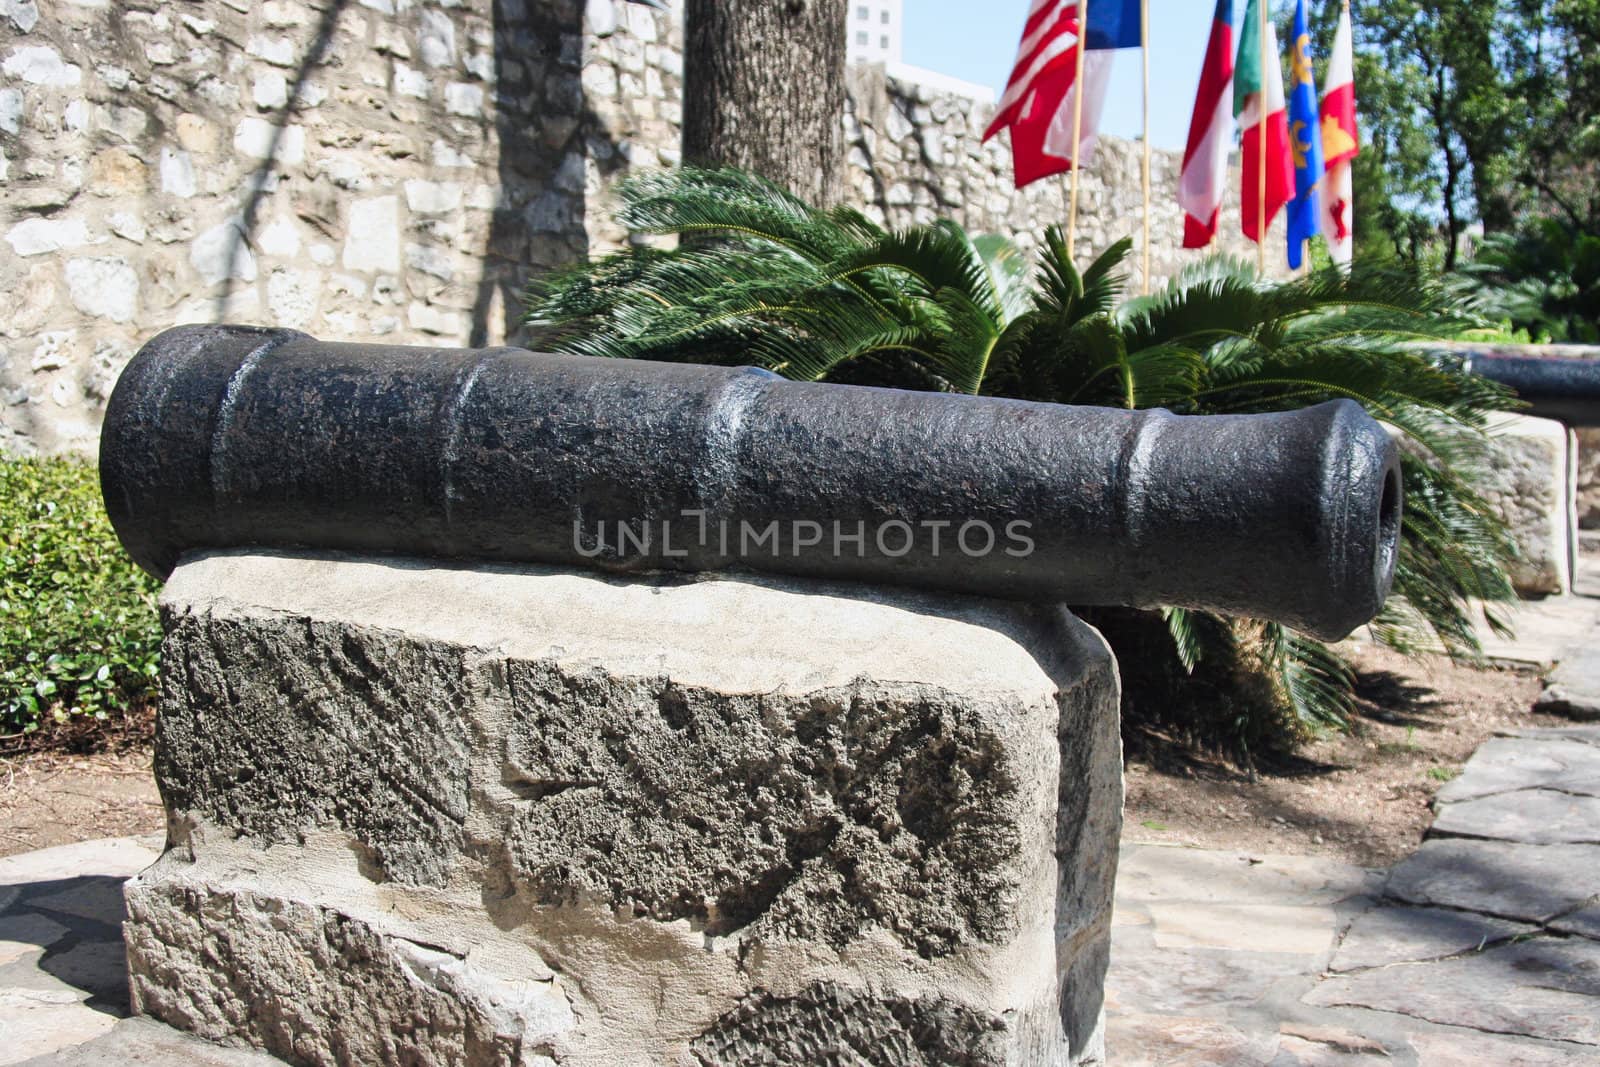 A single cannon at the Alamo